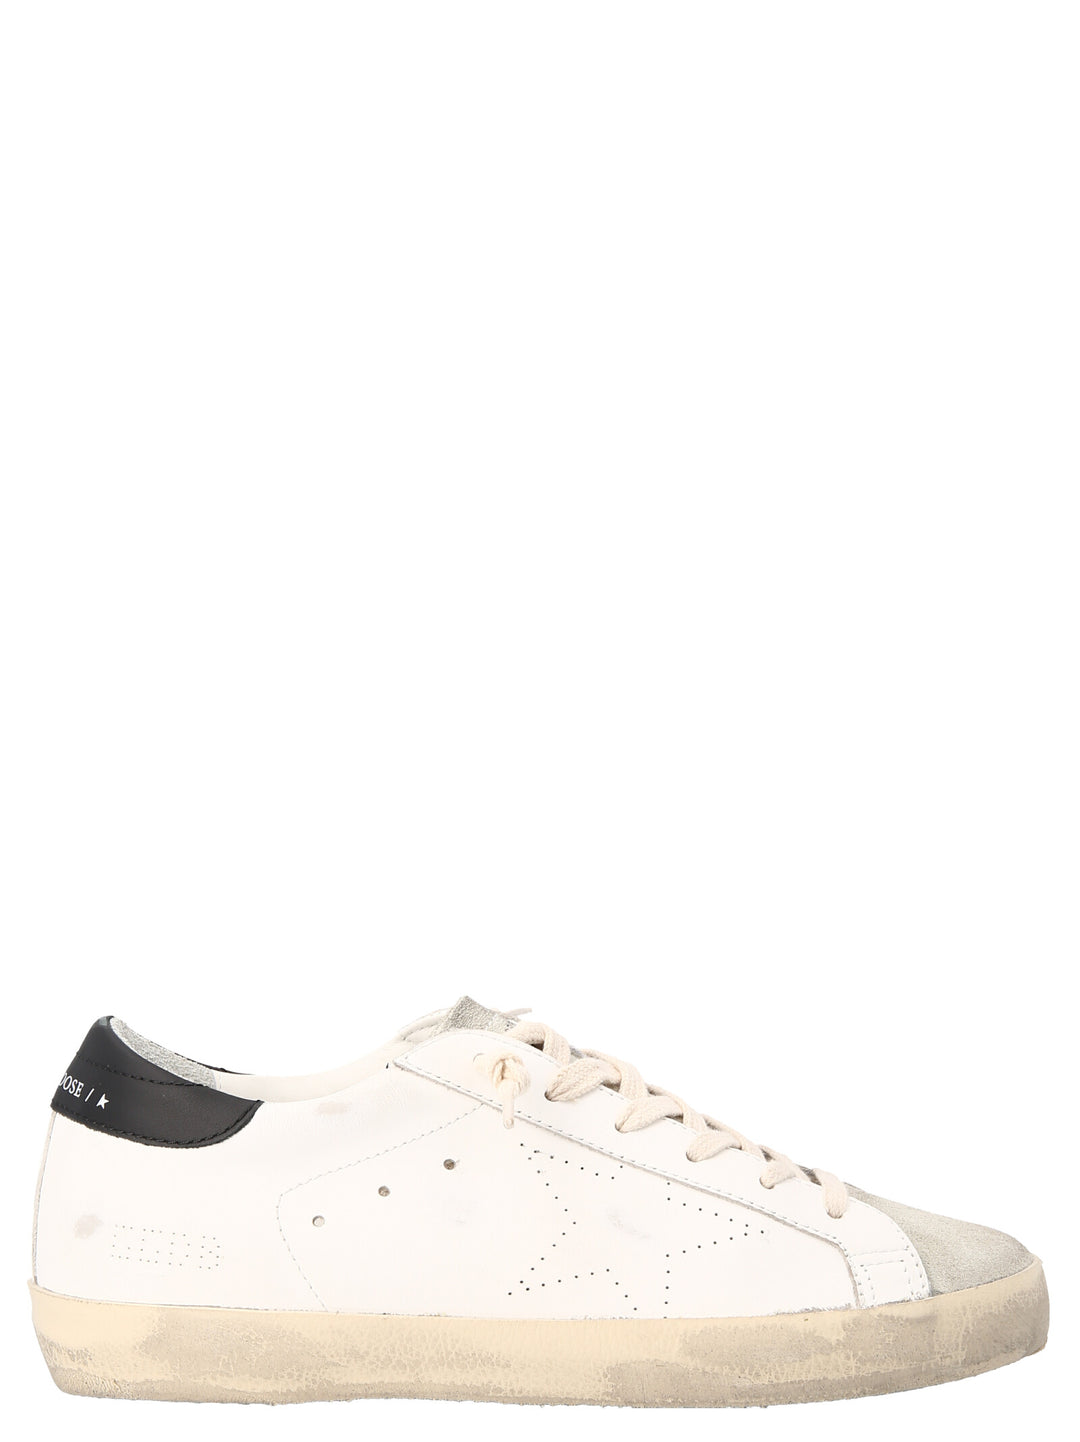 'Superstar' Sneakers Bianco/nero